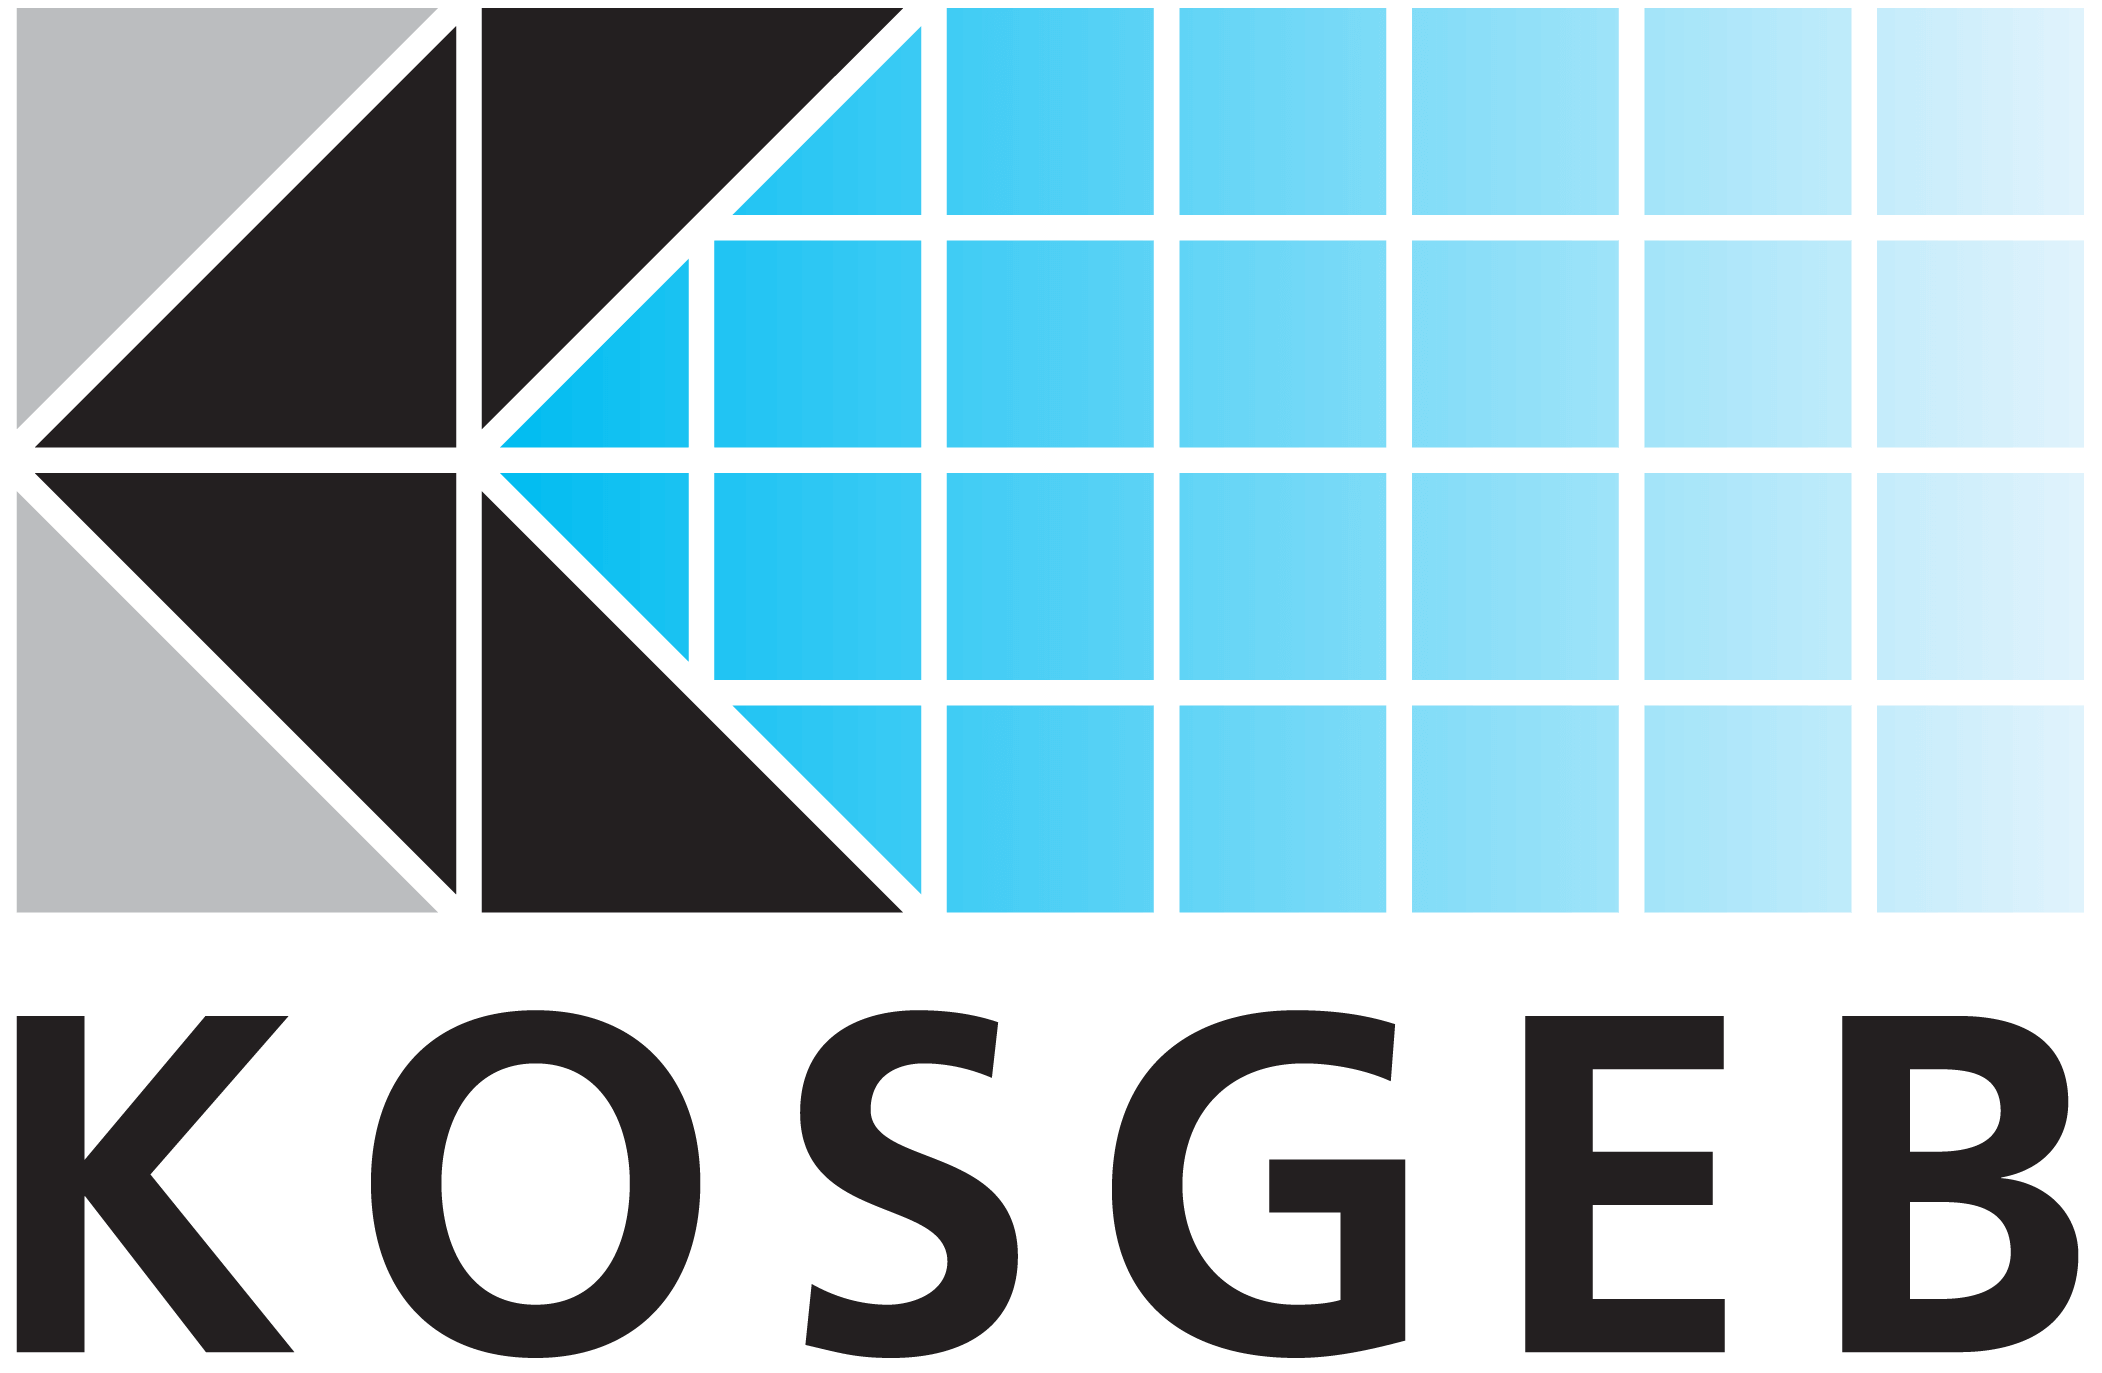 KOSGEB – T.C. Küçük ve Orta Ölçekli İşletmeleri Geliştirme ve Destekleme İdaresi Başkanlığı